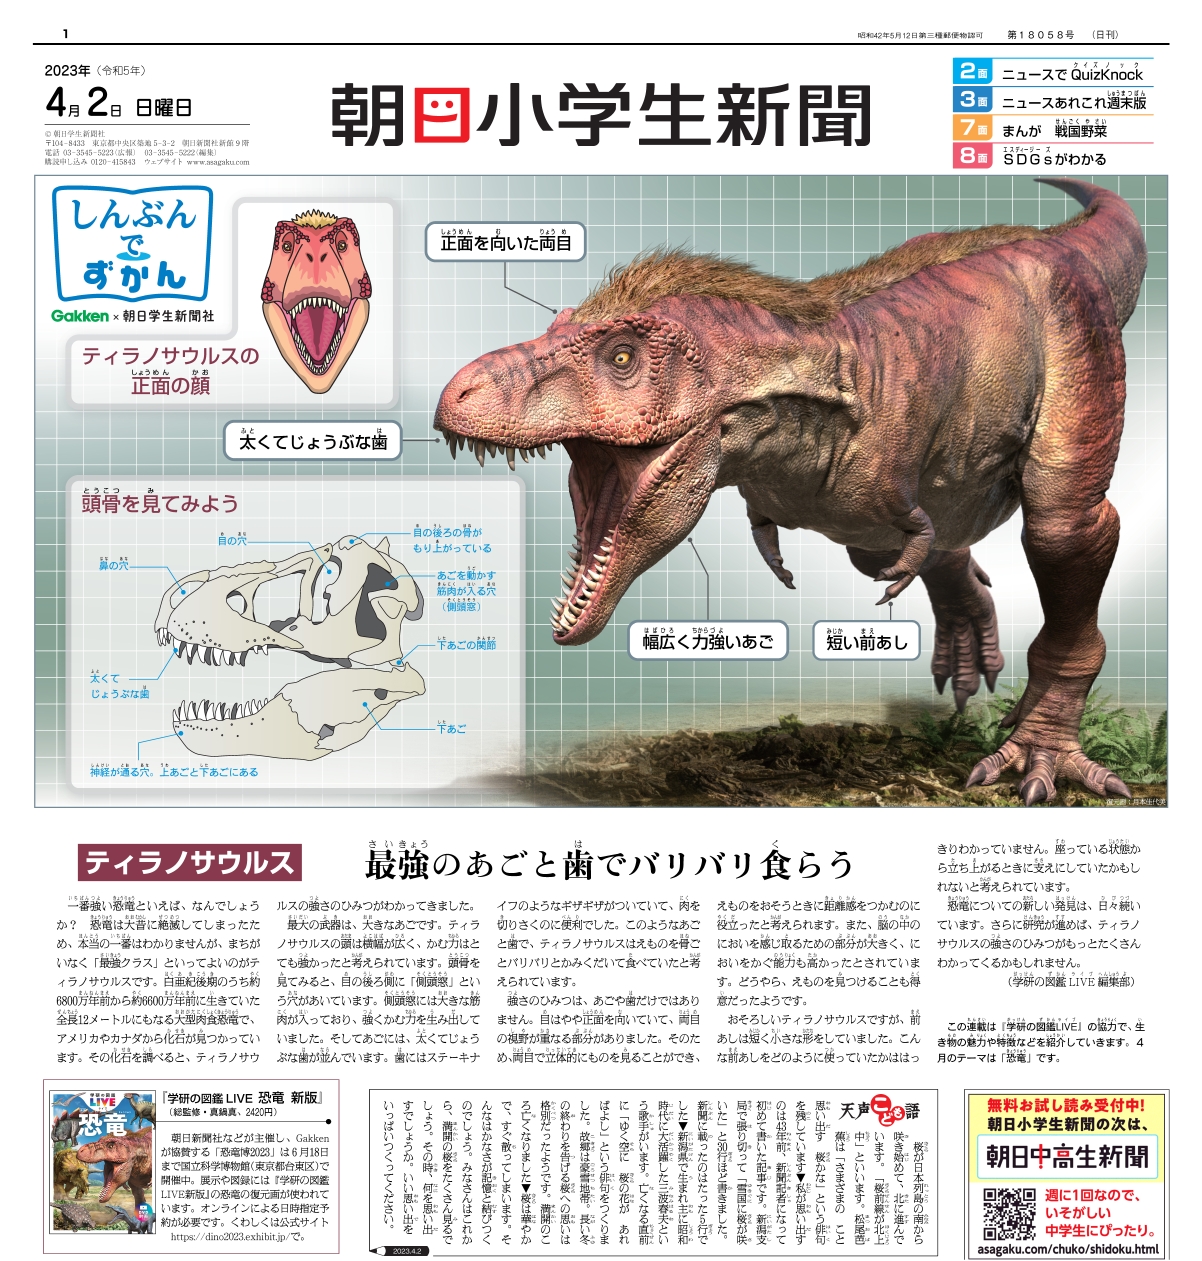 「記念すべき第1回はティラノサウルスを特集」紙面